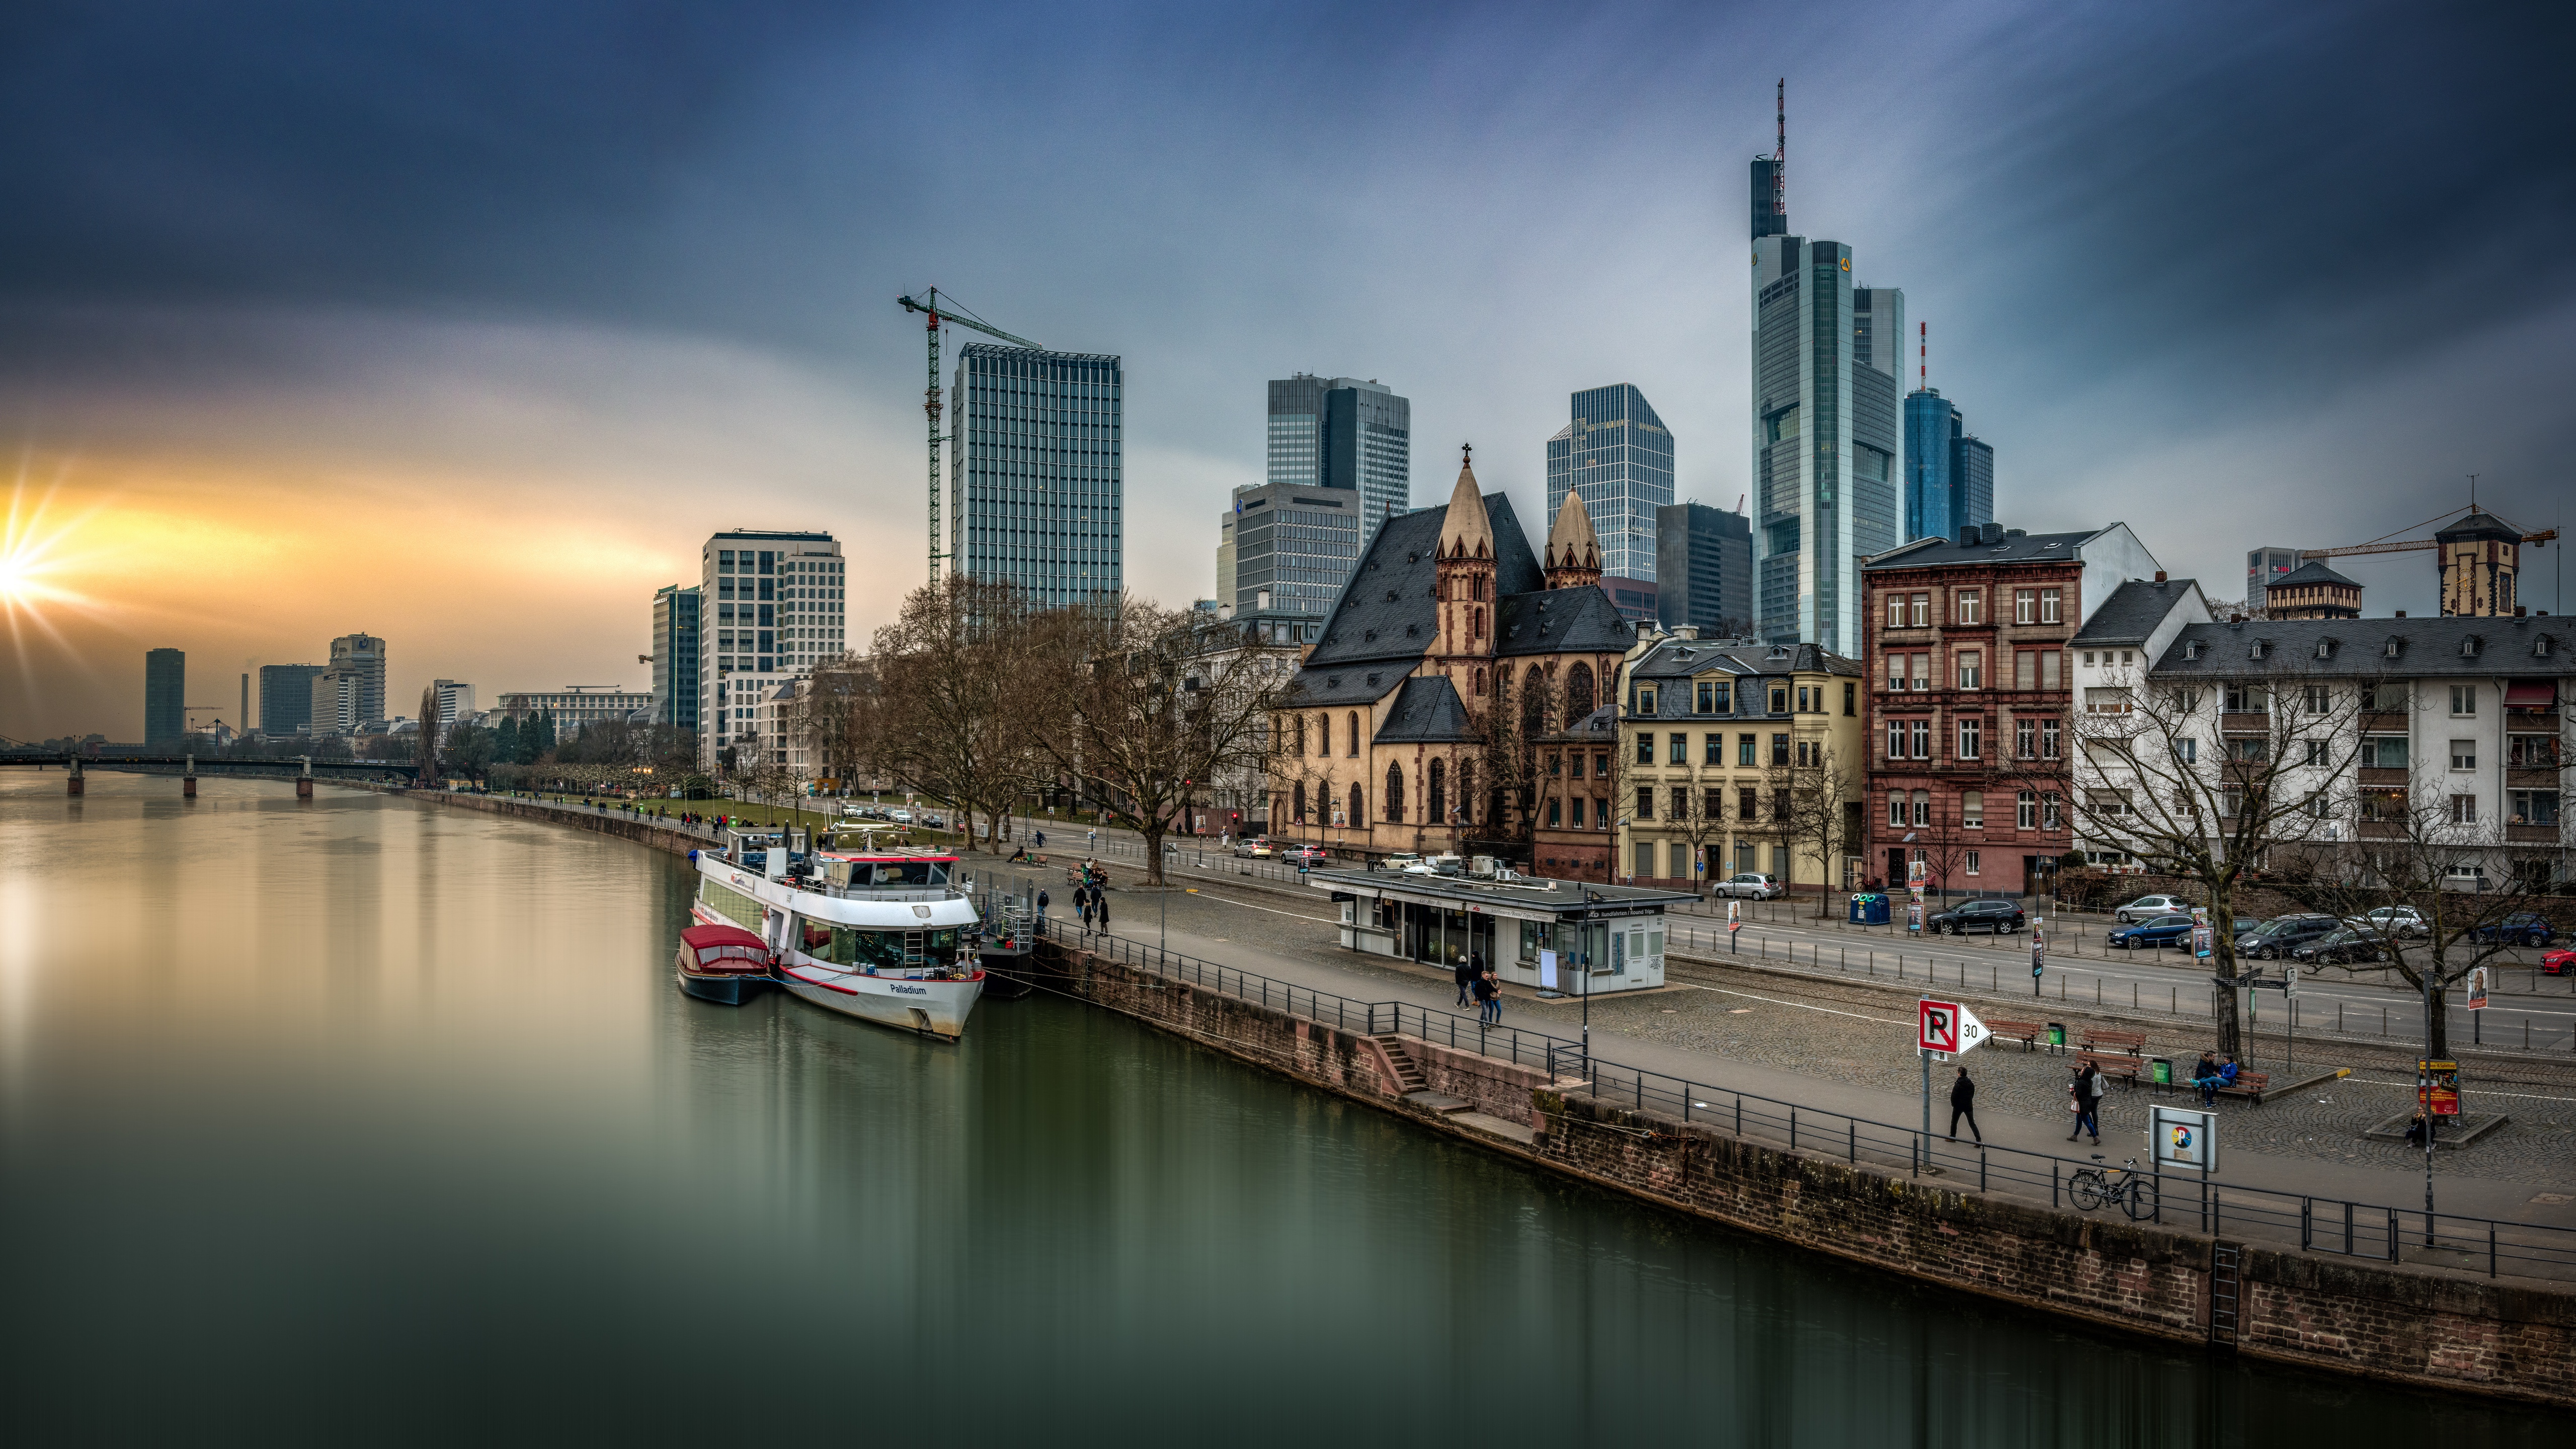 Скачать обои бесплатно Города, Река, Здание, Германия, Франкфурт, Сделано Человеком картинка на рабочий стол ПК